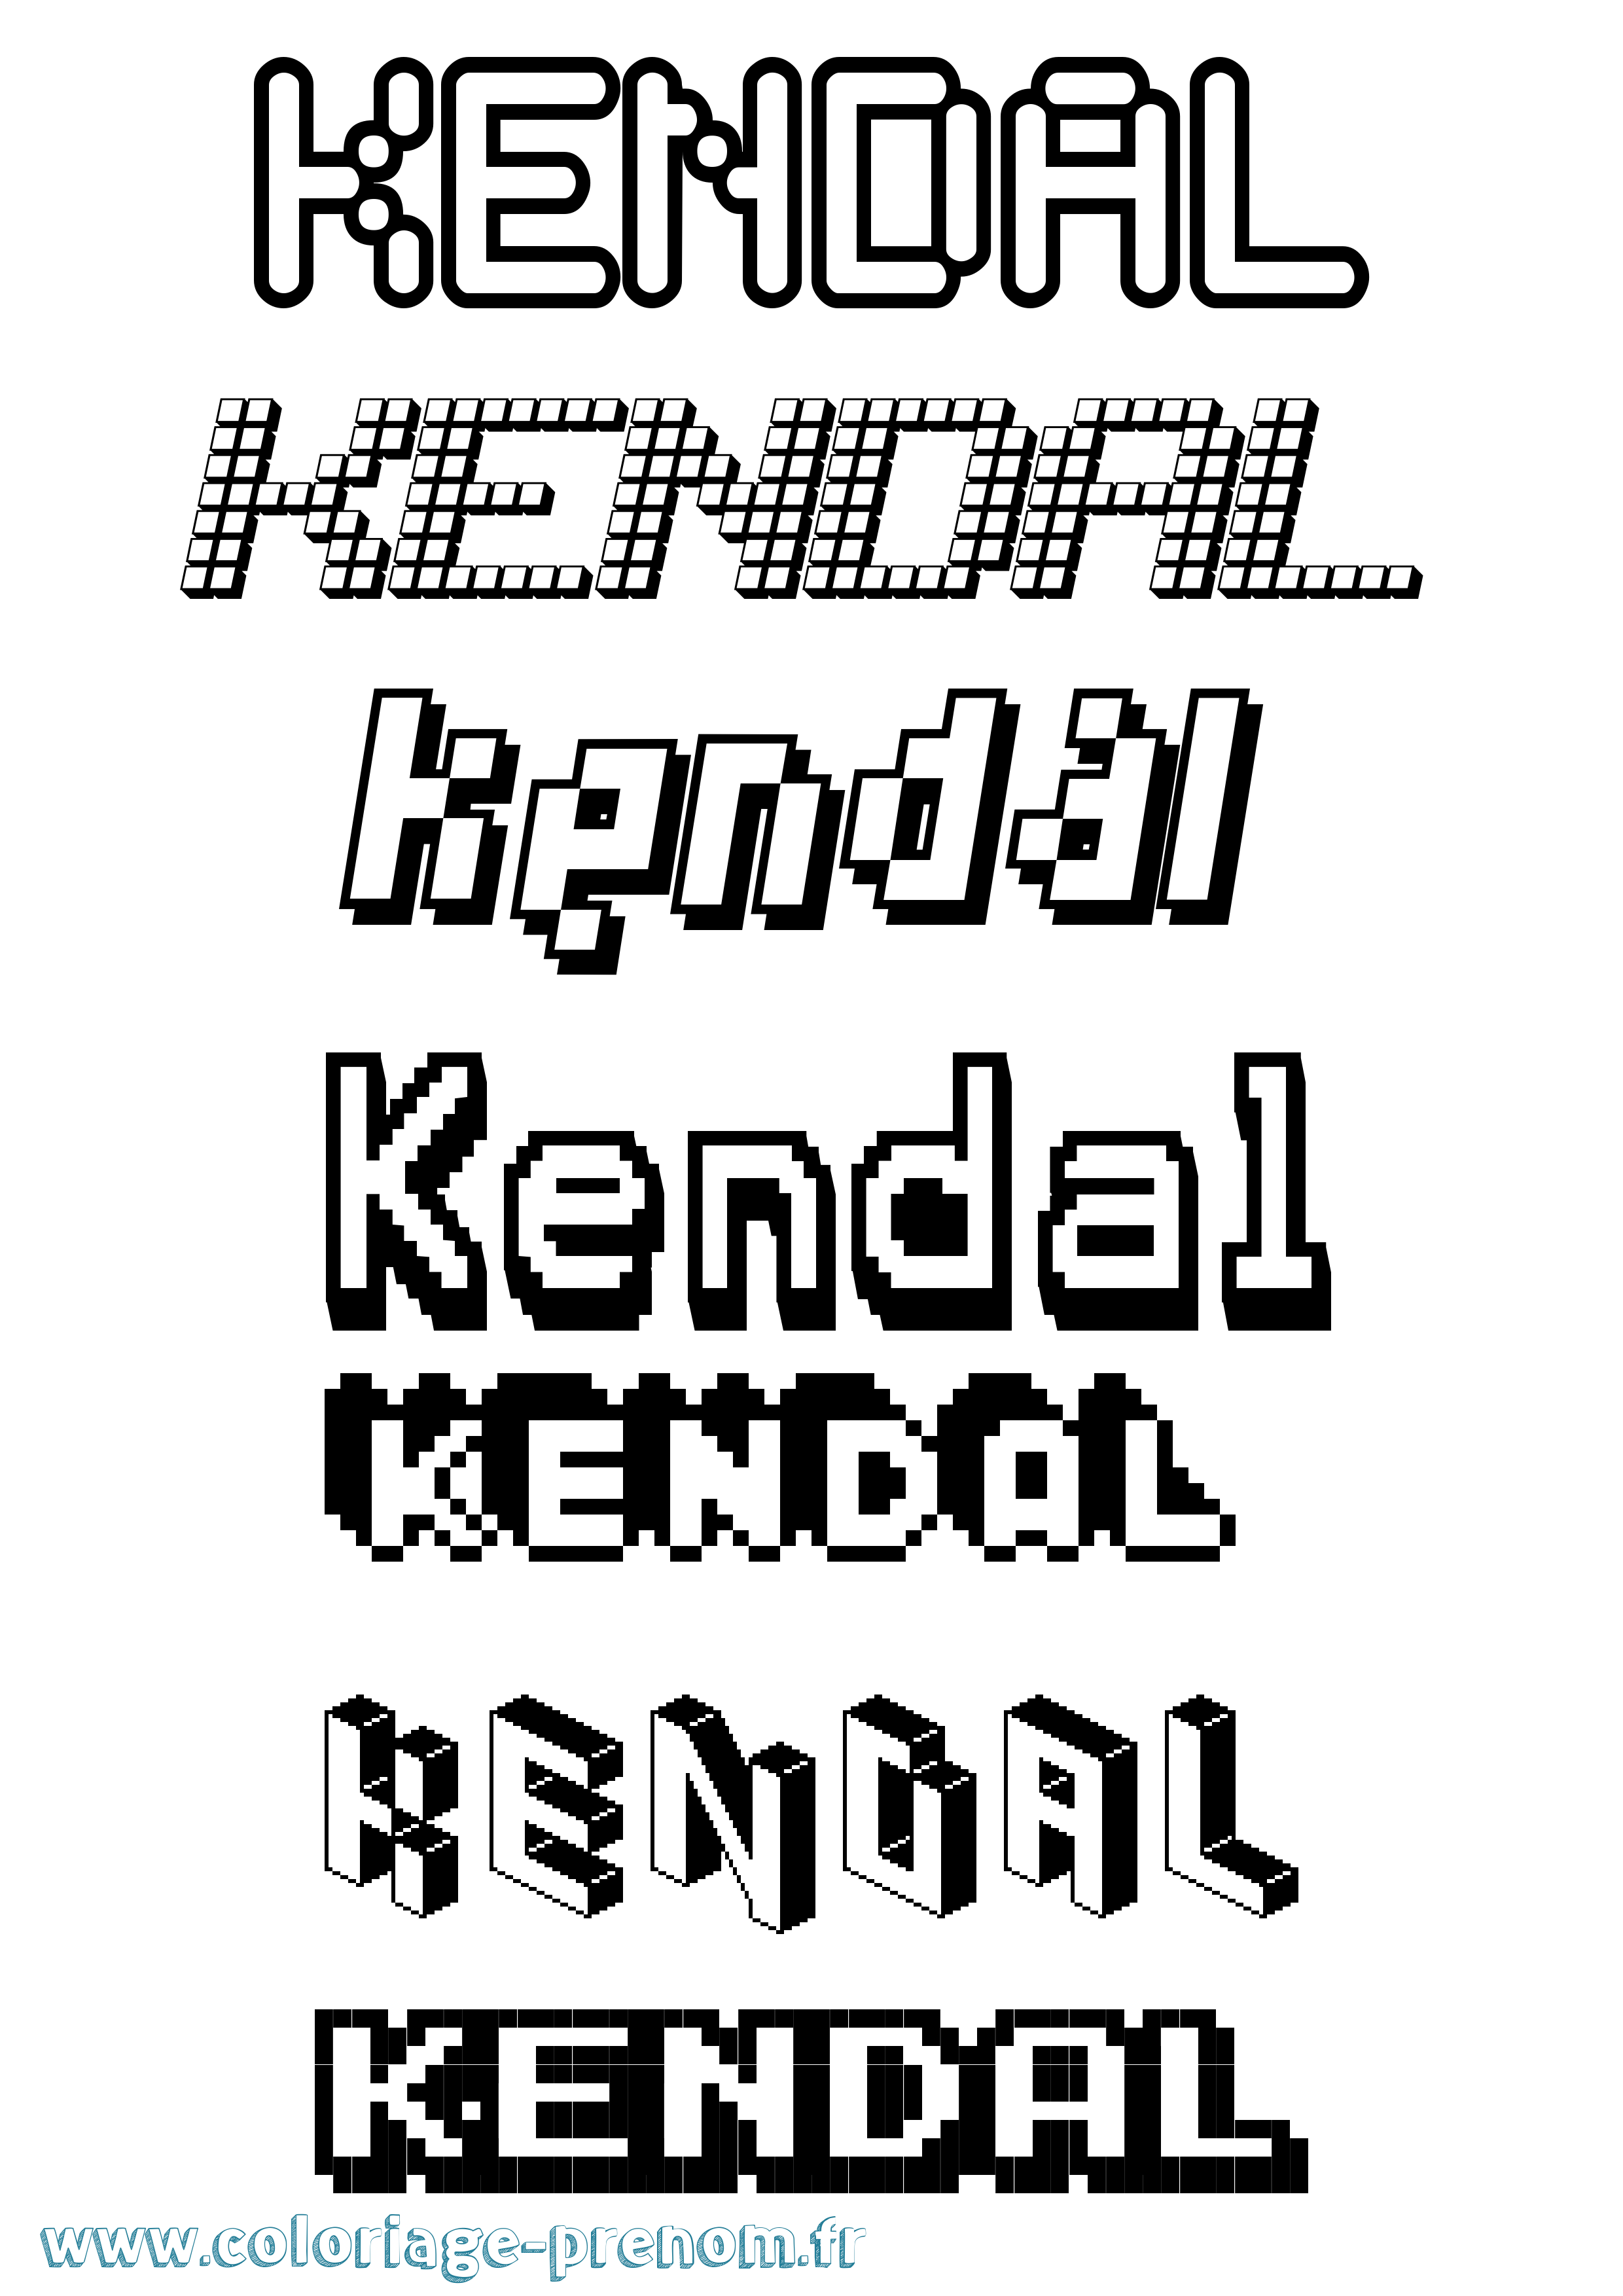 Coloriage prénom Kendal Pixel